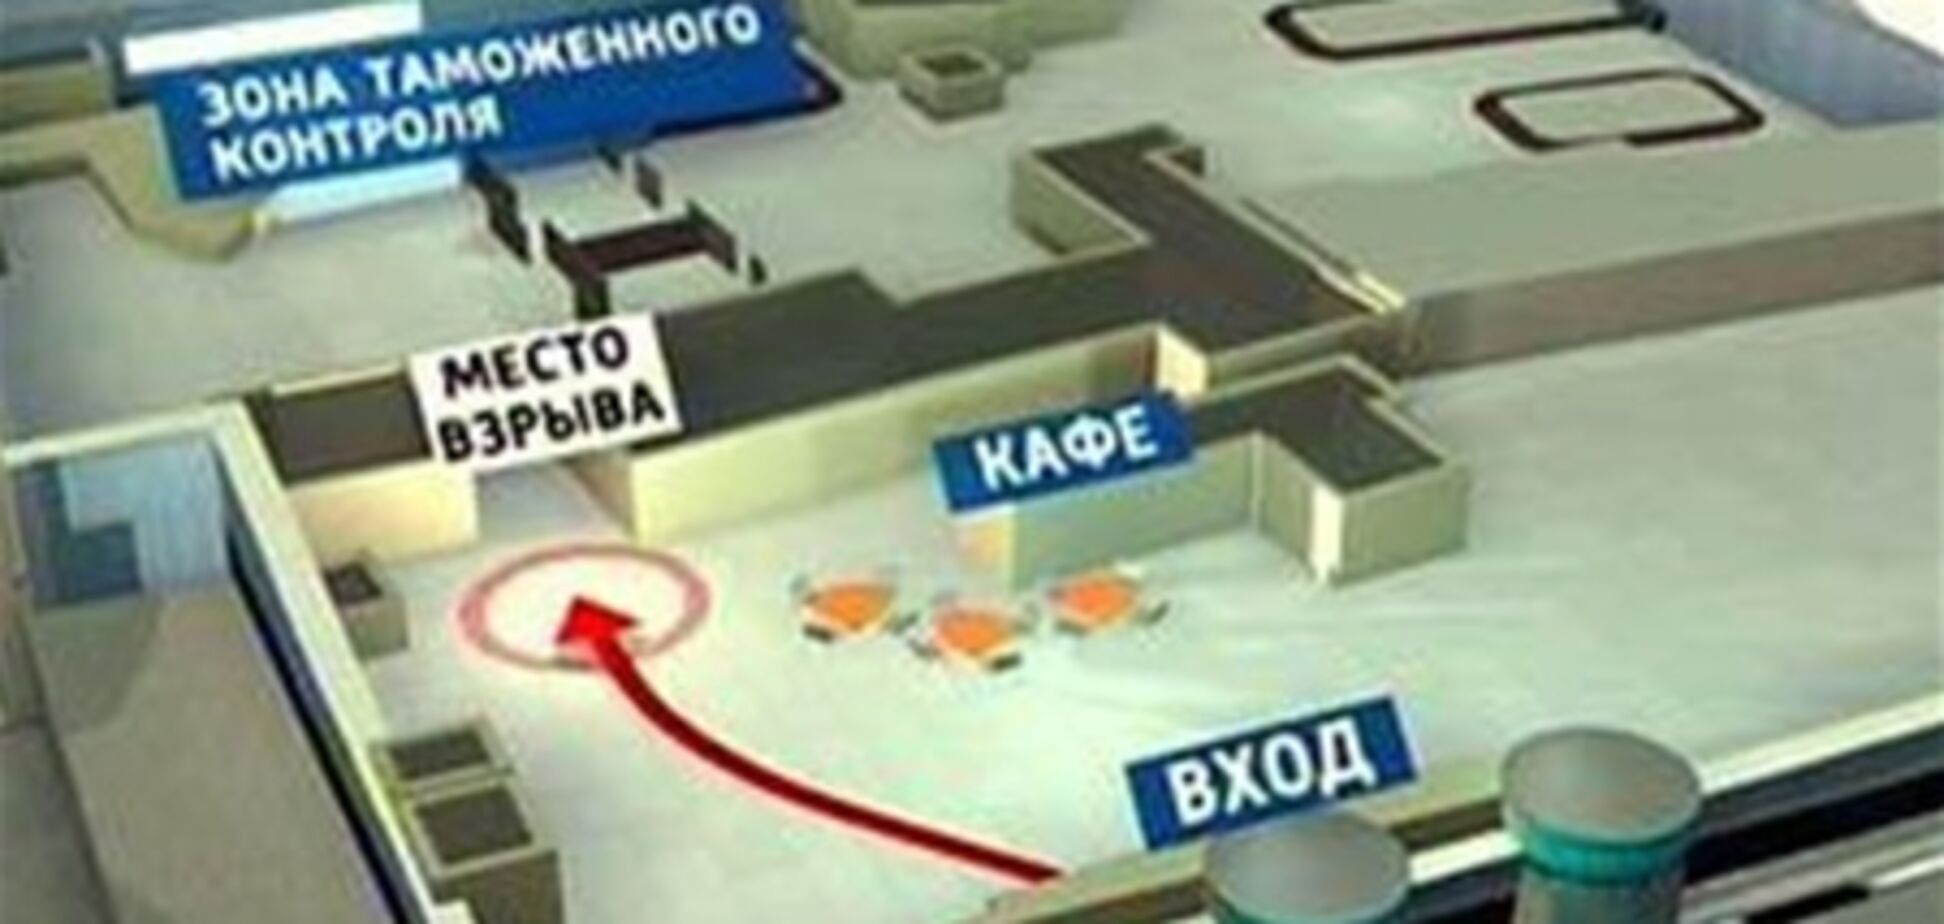 Опознаны тела 28 погибших при теракте в 'Домодедово'